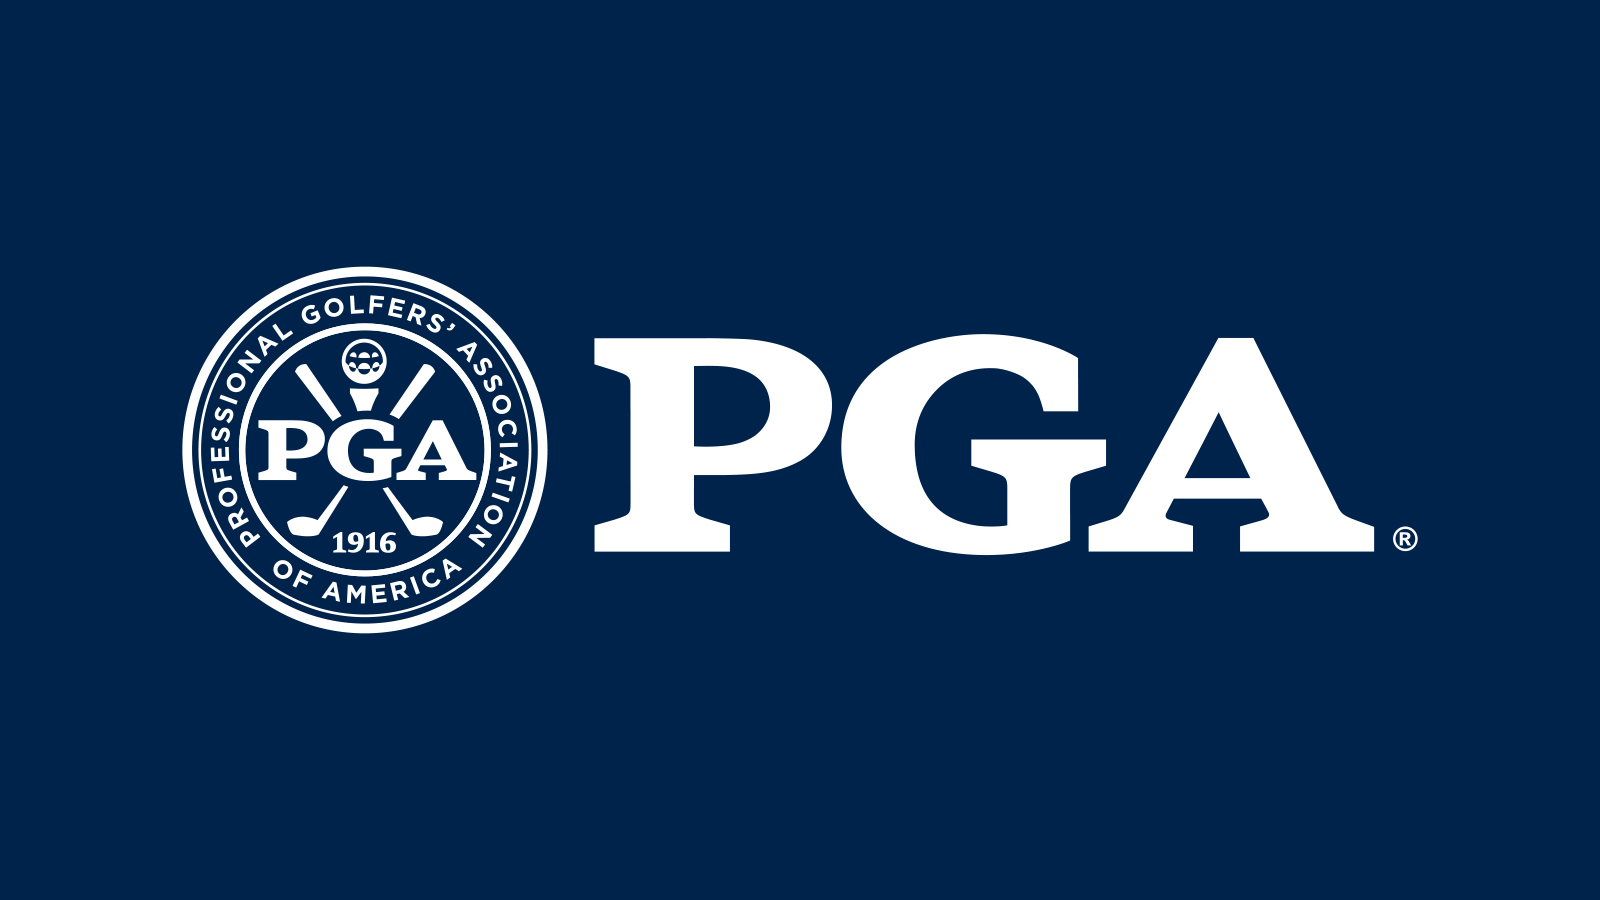 2022 Us Open Golf Logo 2014 U.S. Open (golf) Wikipedia Open